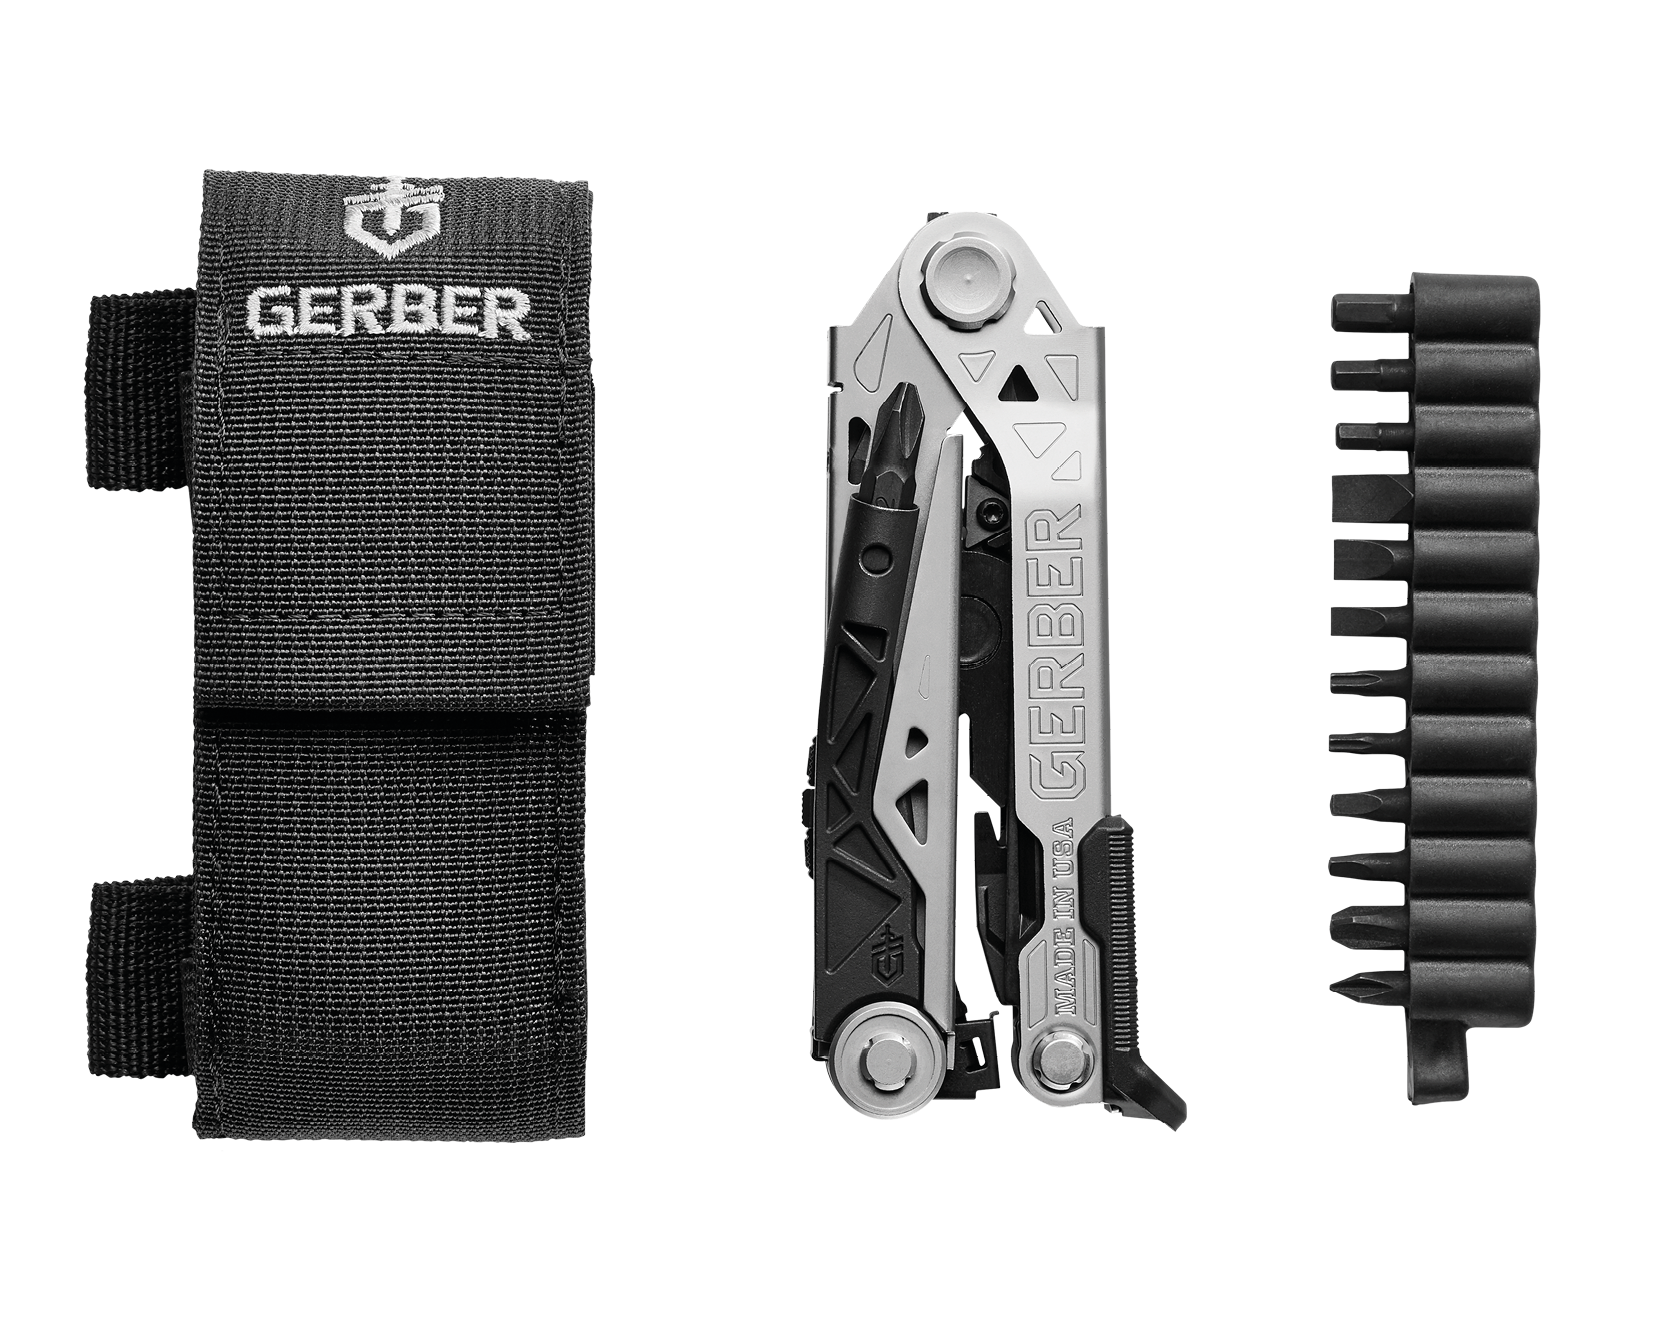 gerber multi tool replacement